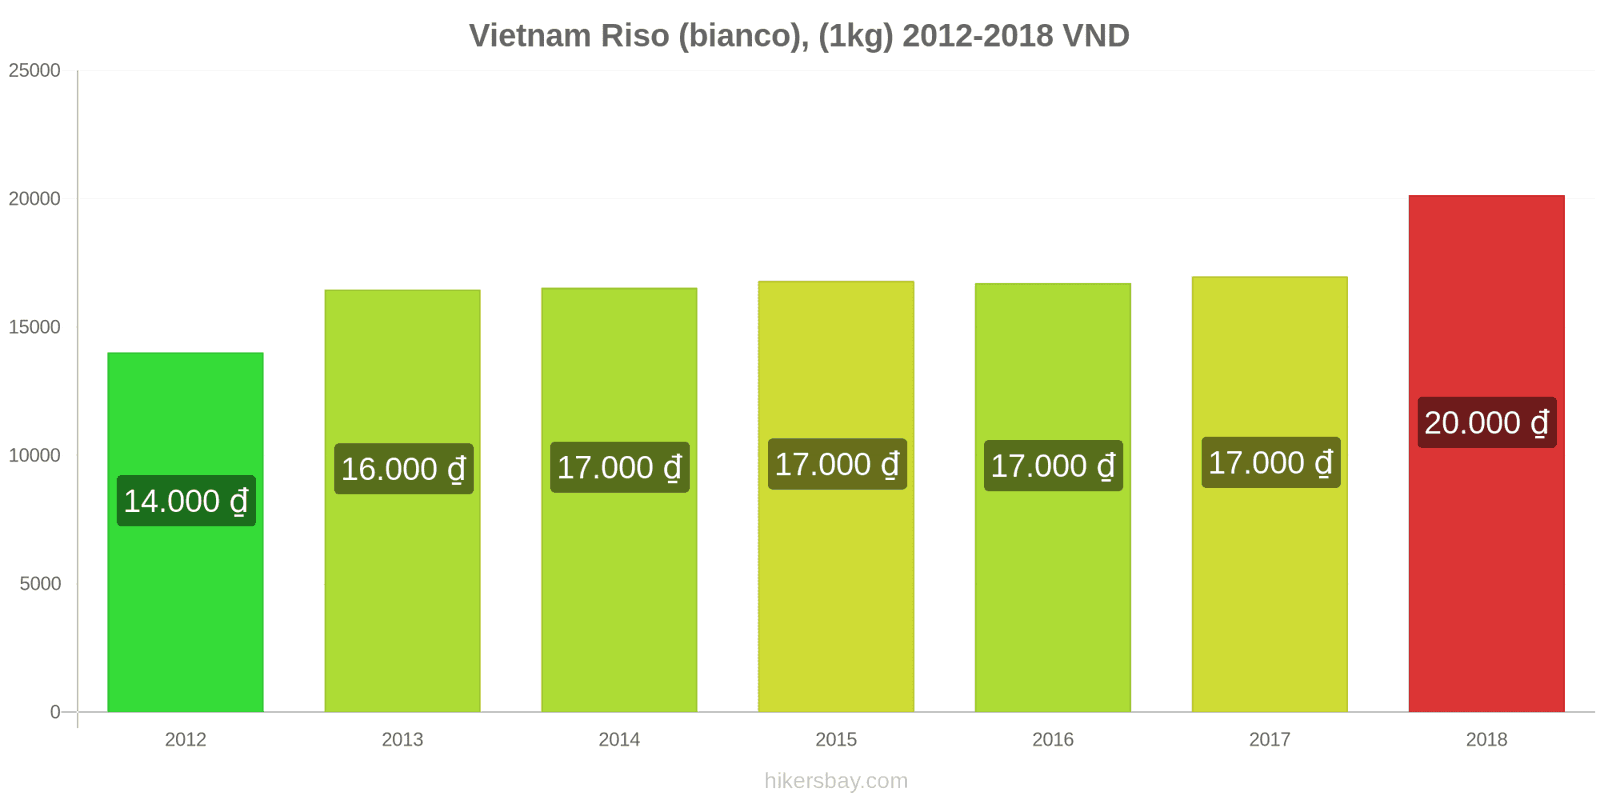 Vietnam cambi di prezzo Chilo di riso bianco hikersbay.com